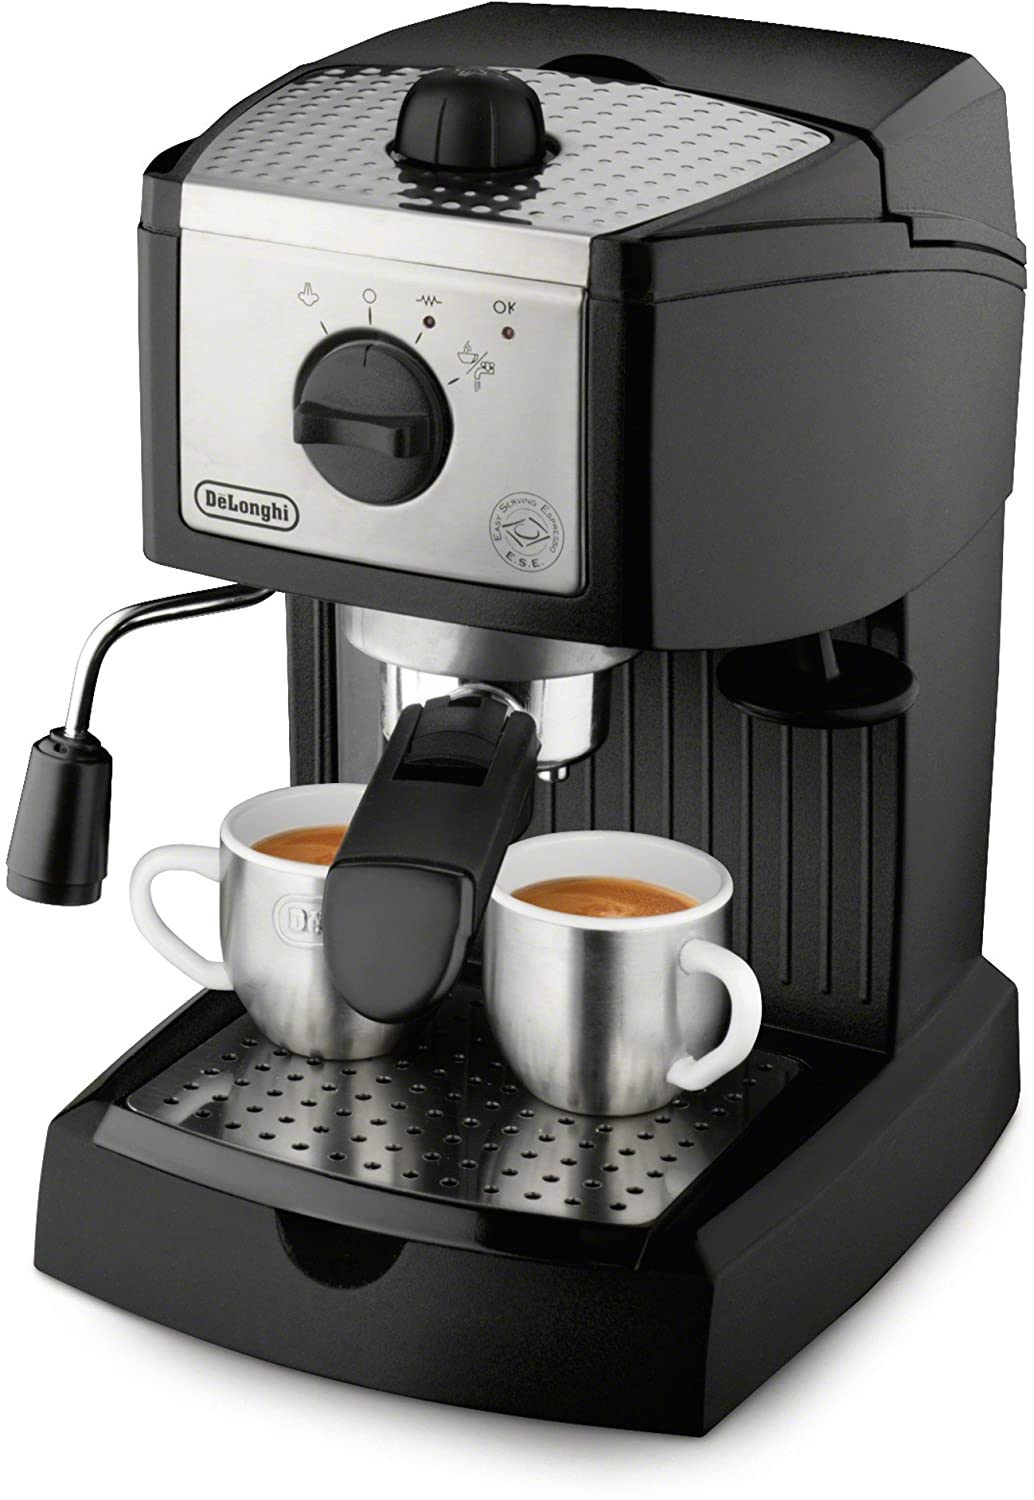 ديلونجي افضل ماكينات اسبريسو من ديلونجي مكائن ومستلزمات تحضير القهوة مجتمع القهوة